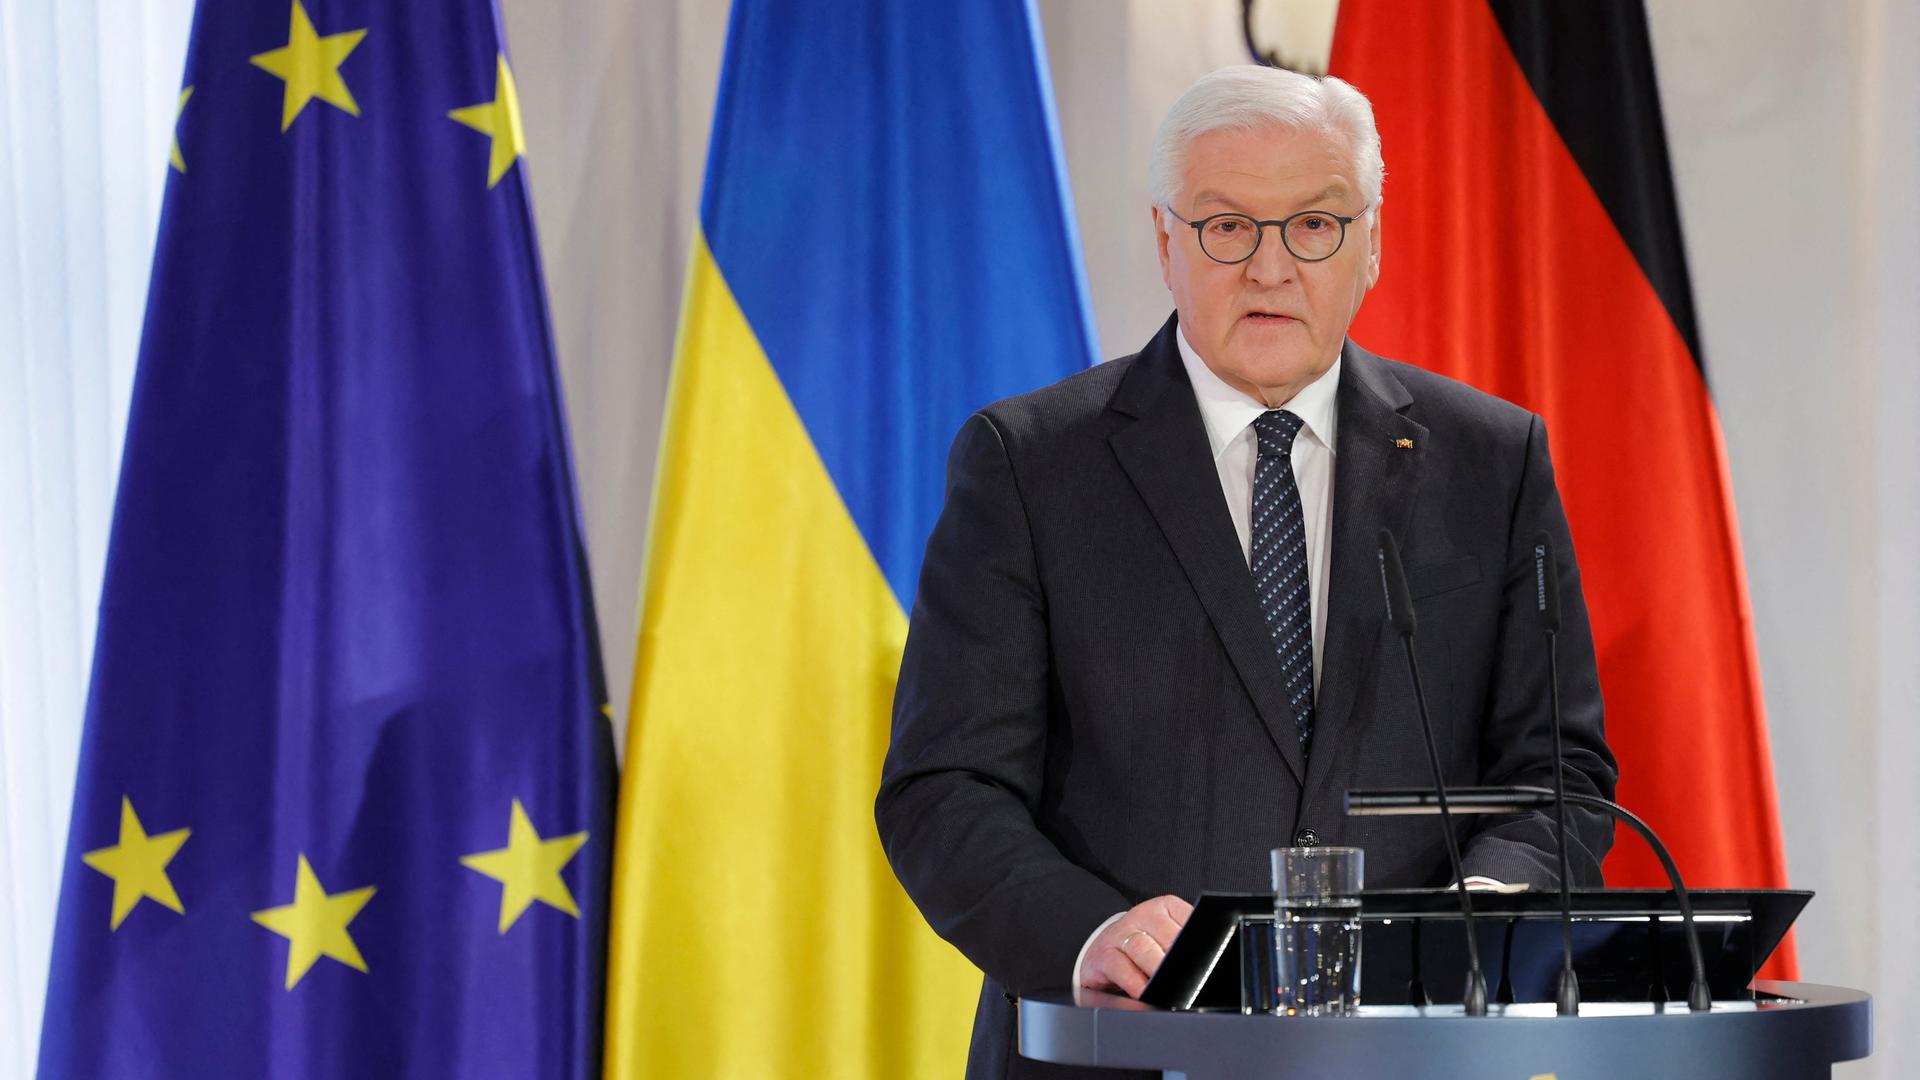 Bundespräsident Steinmeier steht an einem Redepult. Er trägt einen schwarzen Anzug und eine schwarze Krawatte. Im Hintergrund sieht man die ukrainische und die deutsche Flagge sowie die Flagge der EU.